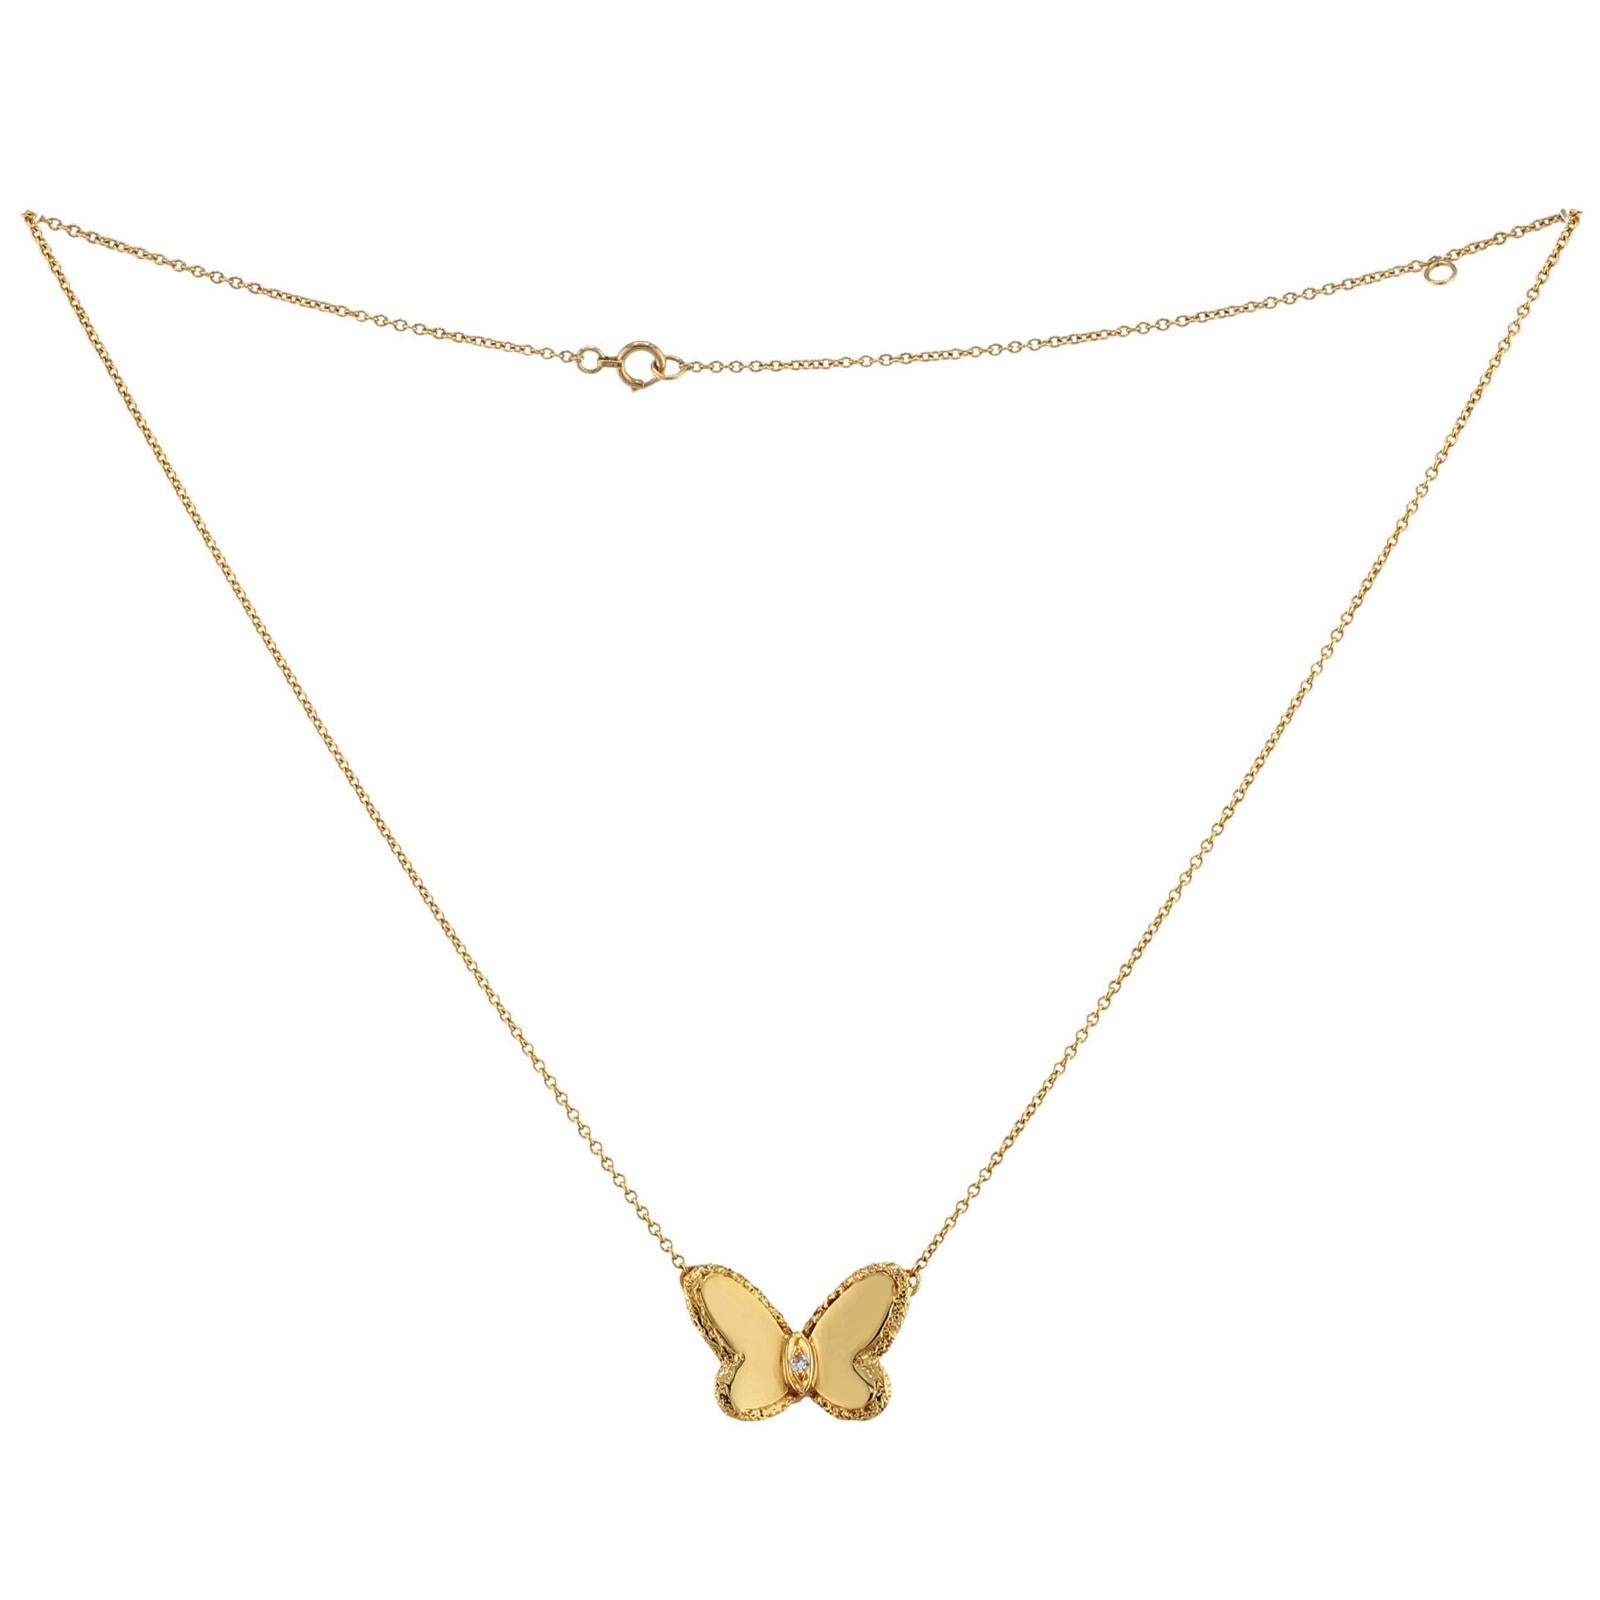 Dieses seltene und sammelbare Vintage-Halsband von Van Cleef & Arpels aus der ikonischen Flying Beauties-Kollektion ist aus strukturiertem 18-karätigem Gelbgold gefertigt und mit einem Diamanten im Brillantschliff mit einem geschätzten Gewicht von